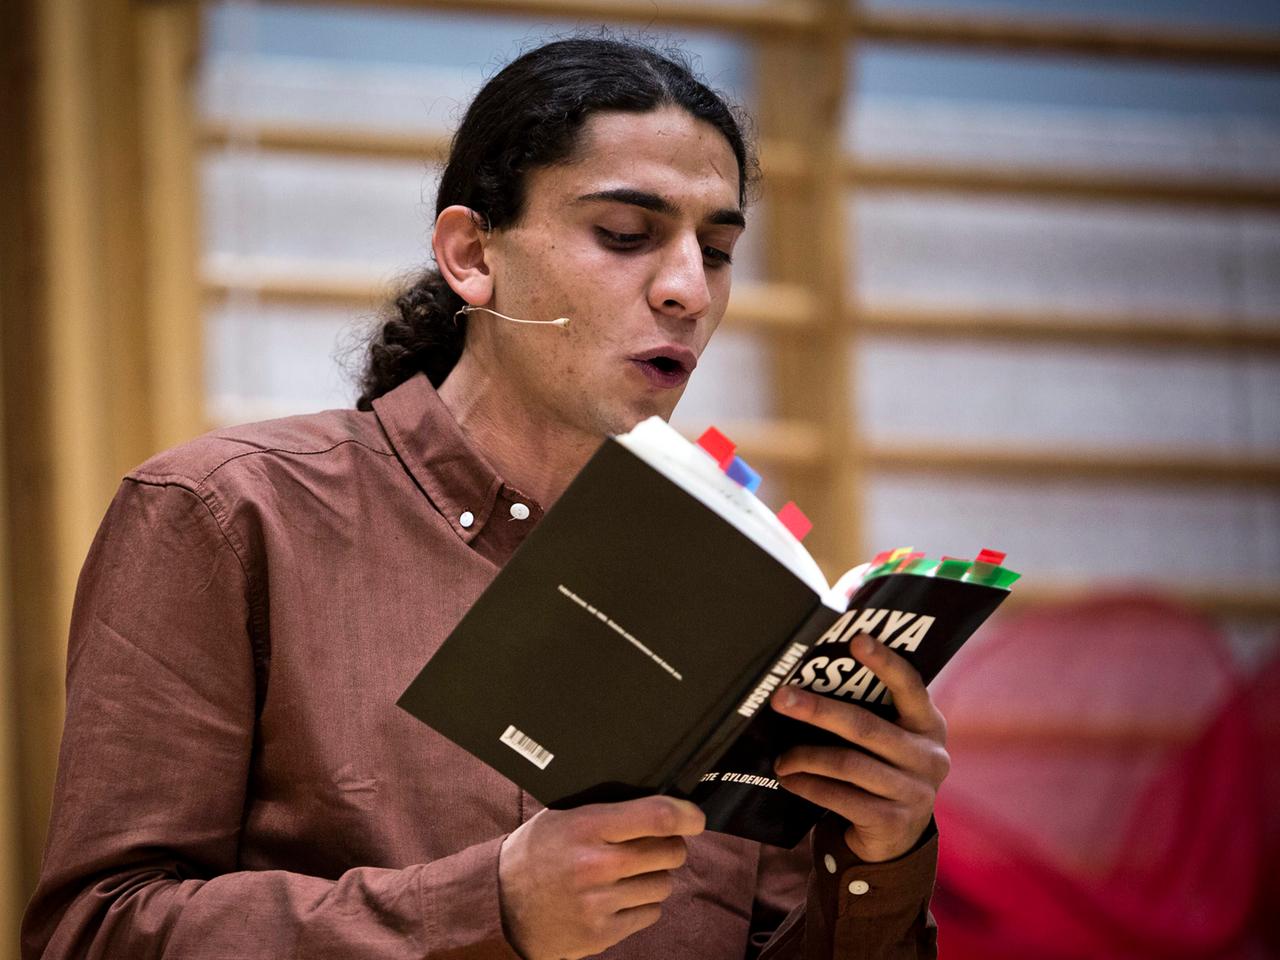 Der junge Dichter Yahya Hassan während einer Lesung im dänischen Vollsmose. Sein Gedichtband sorgte nach der Veröffentlichung im Oktober 2013 für eine Debatte über Immigranten und Rassismus in Dänemark.